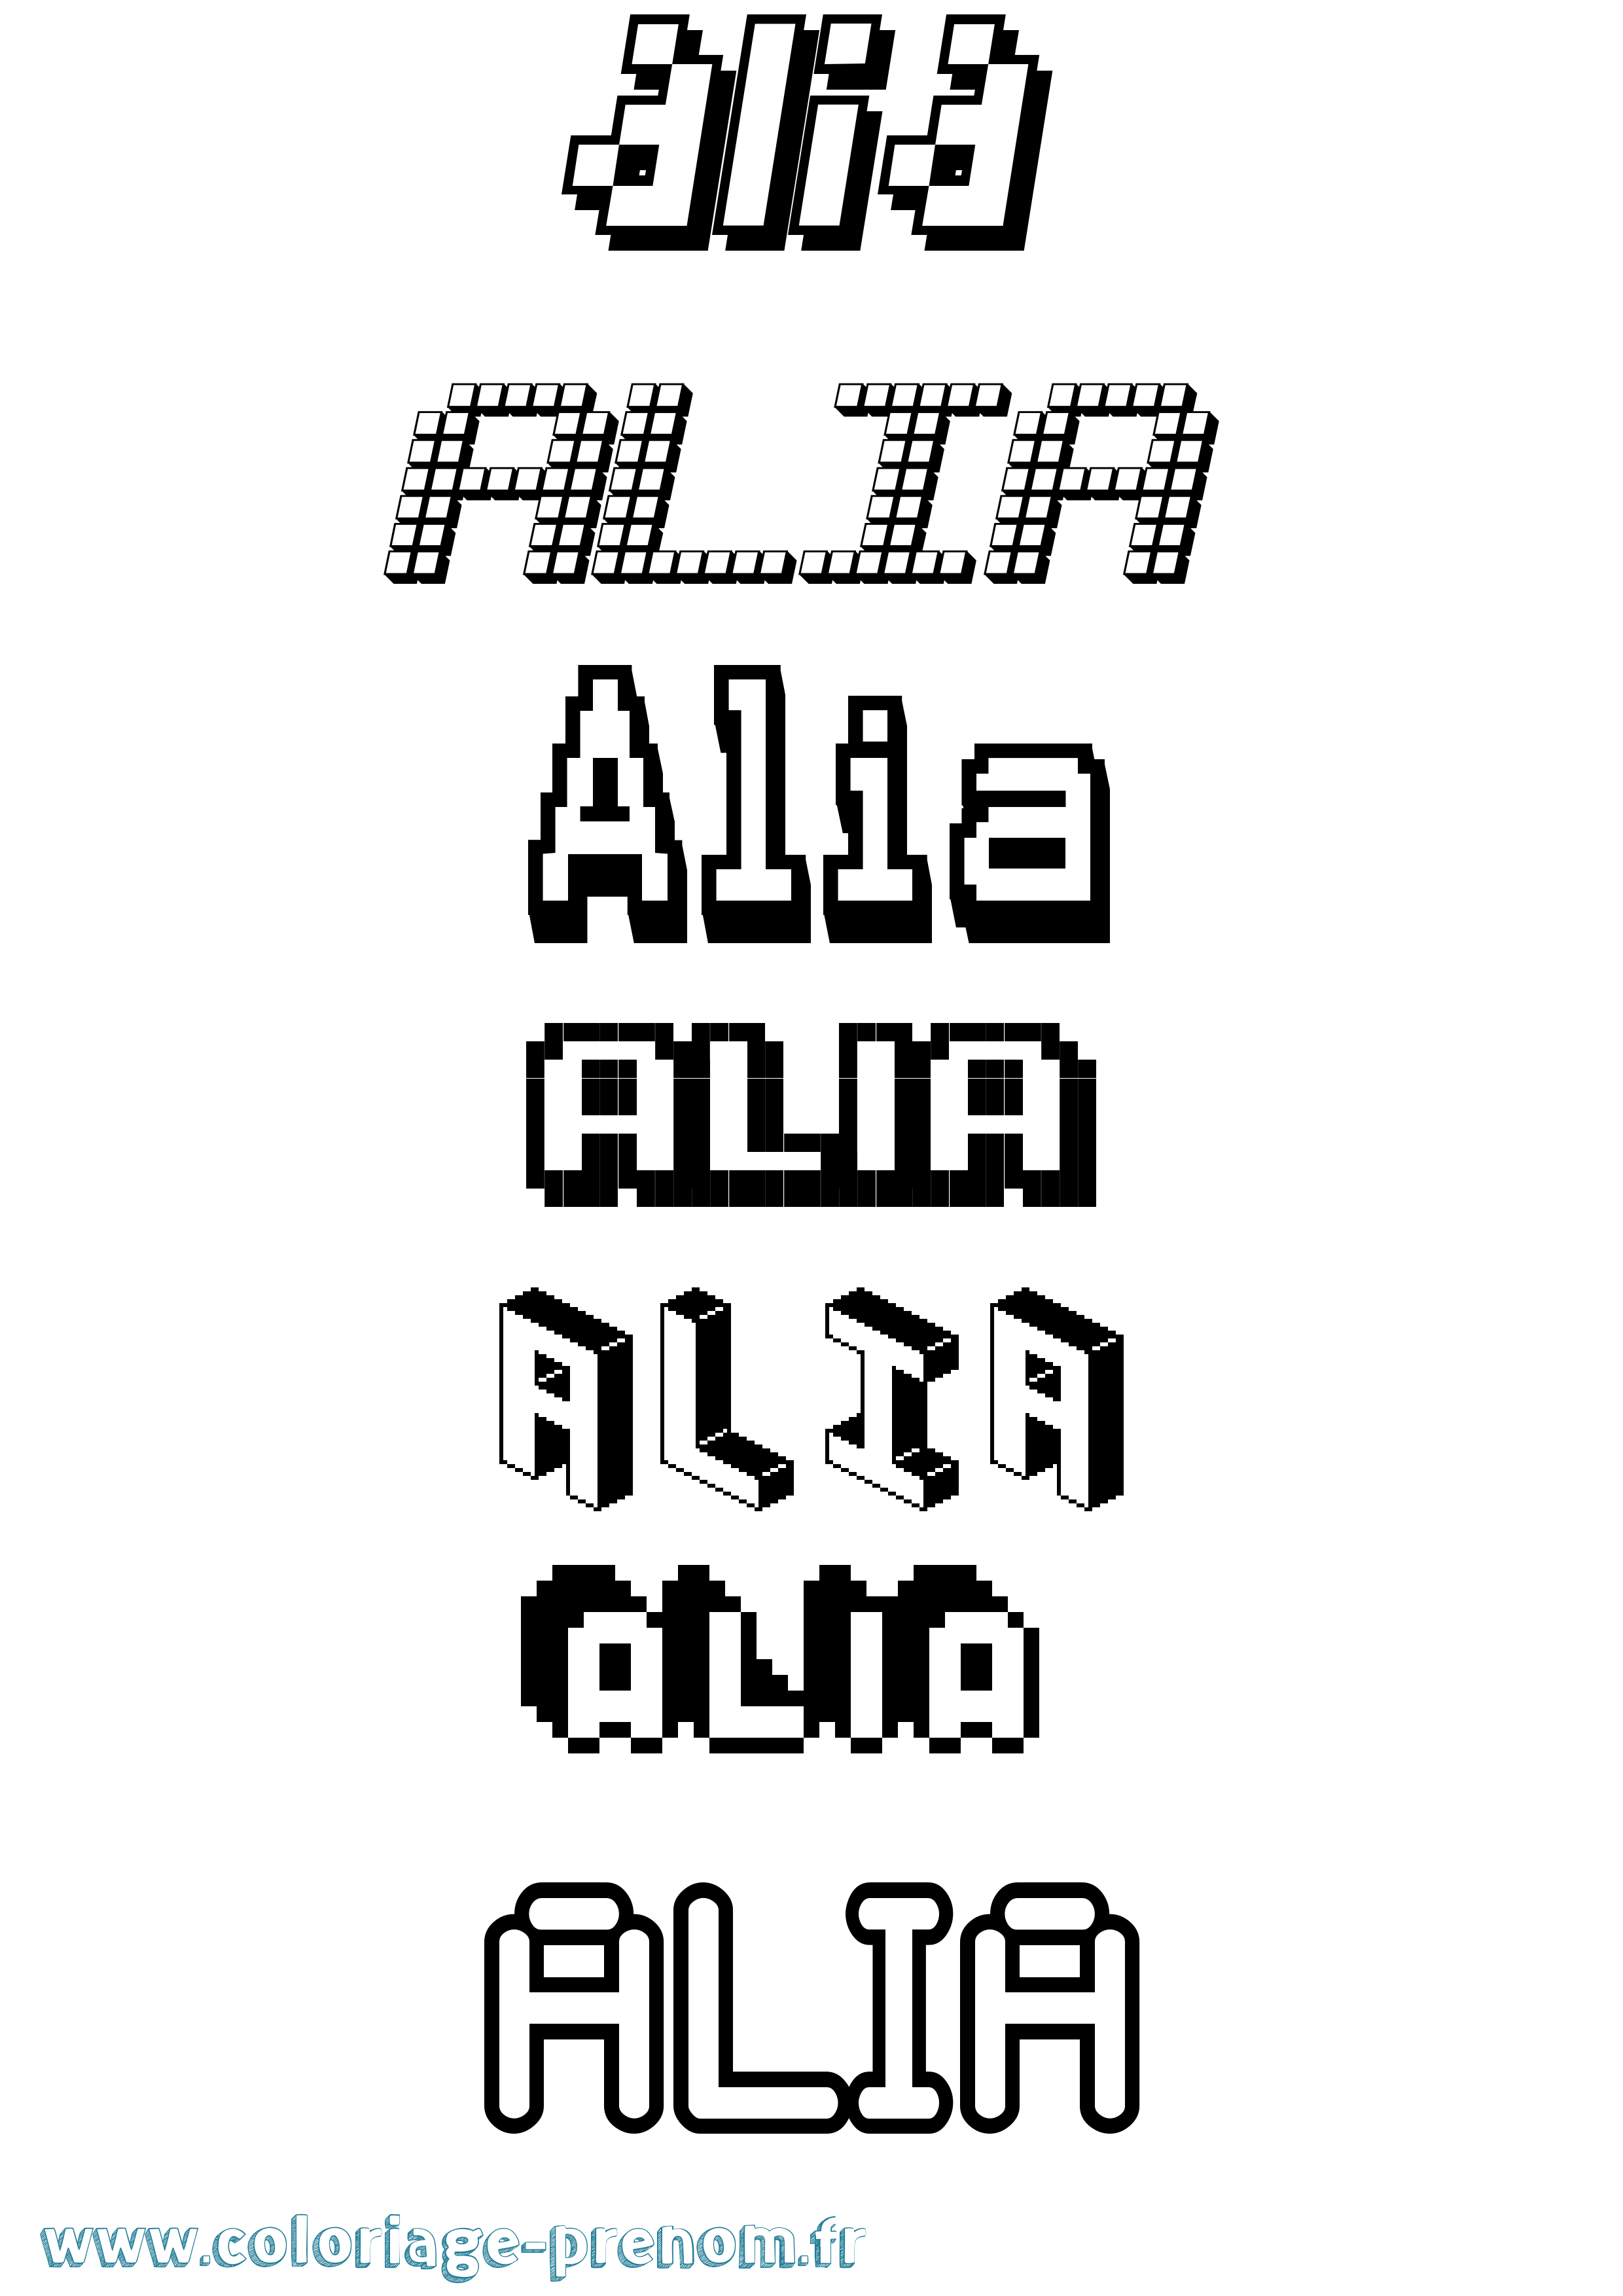 Coloriage prénom Alia Pixel